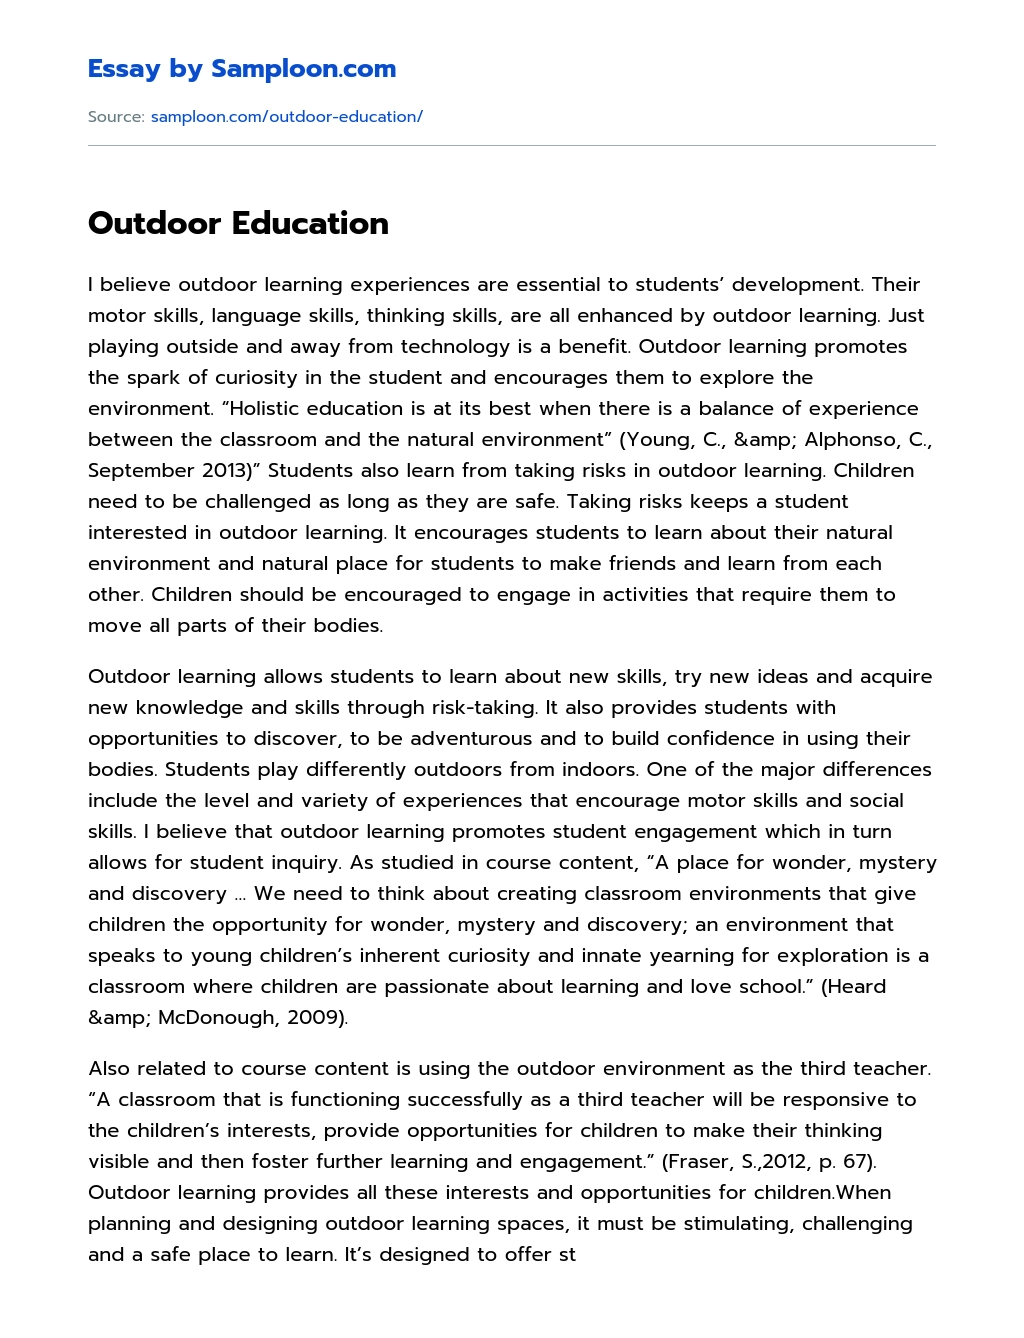 Outdoor Education essay